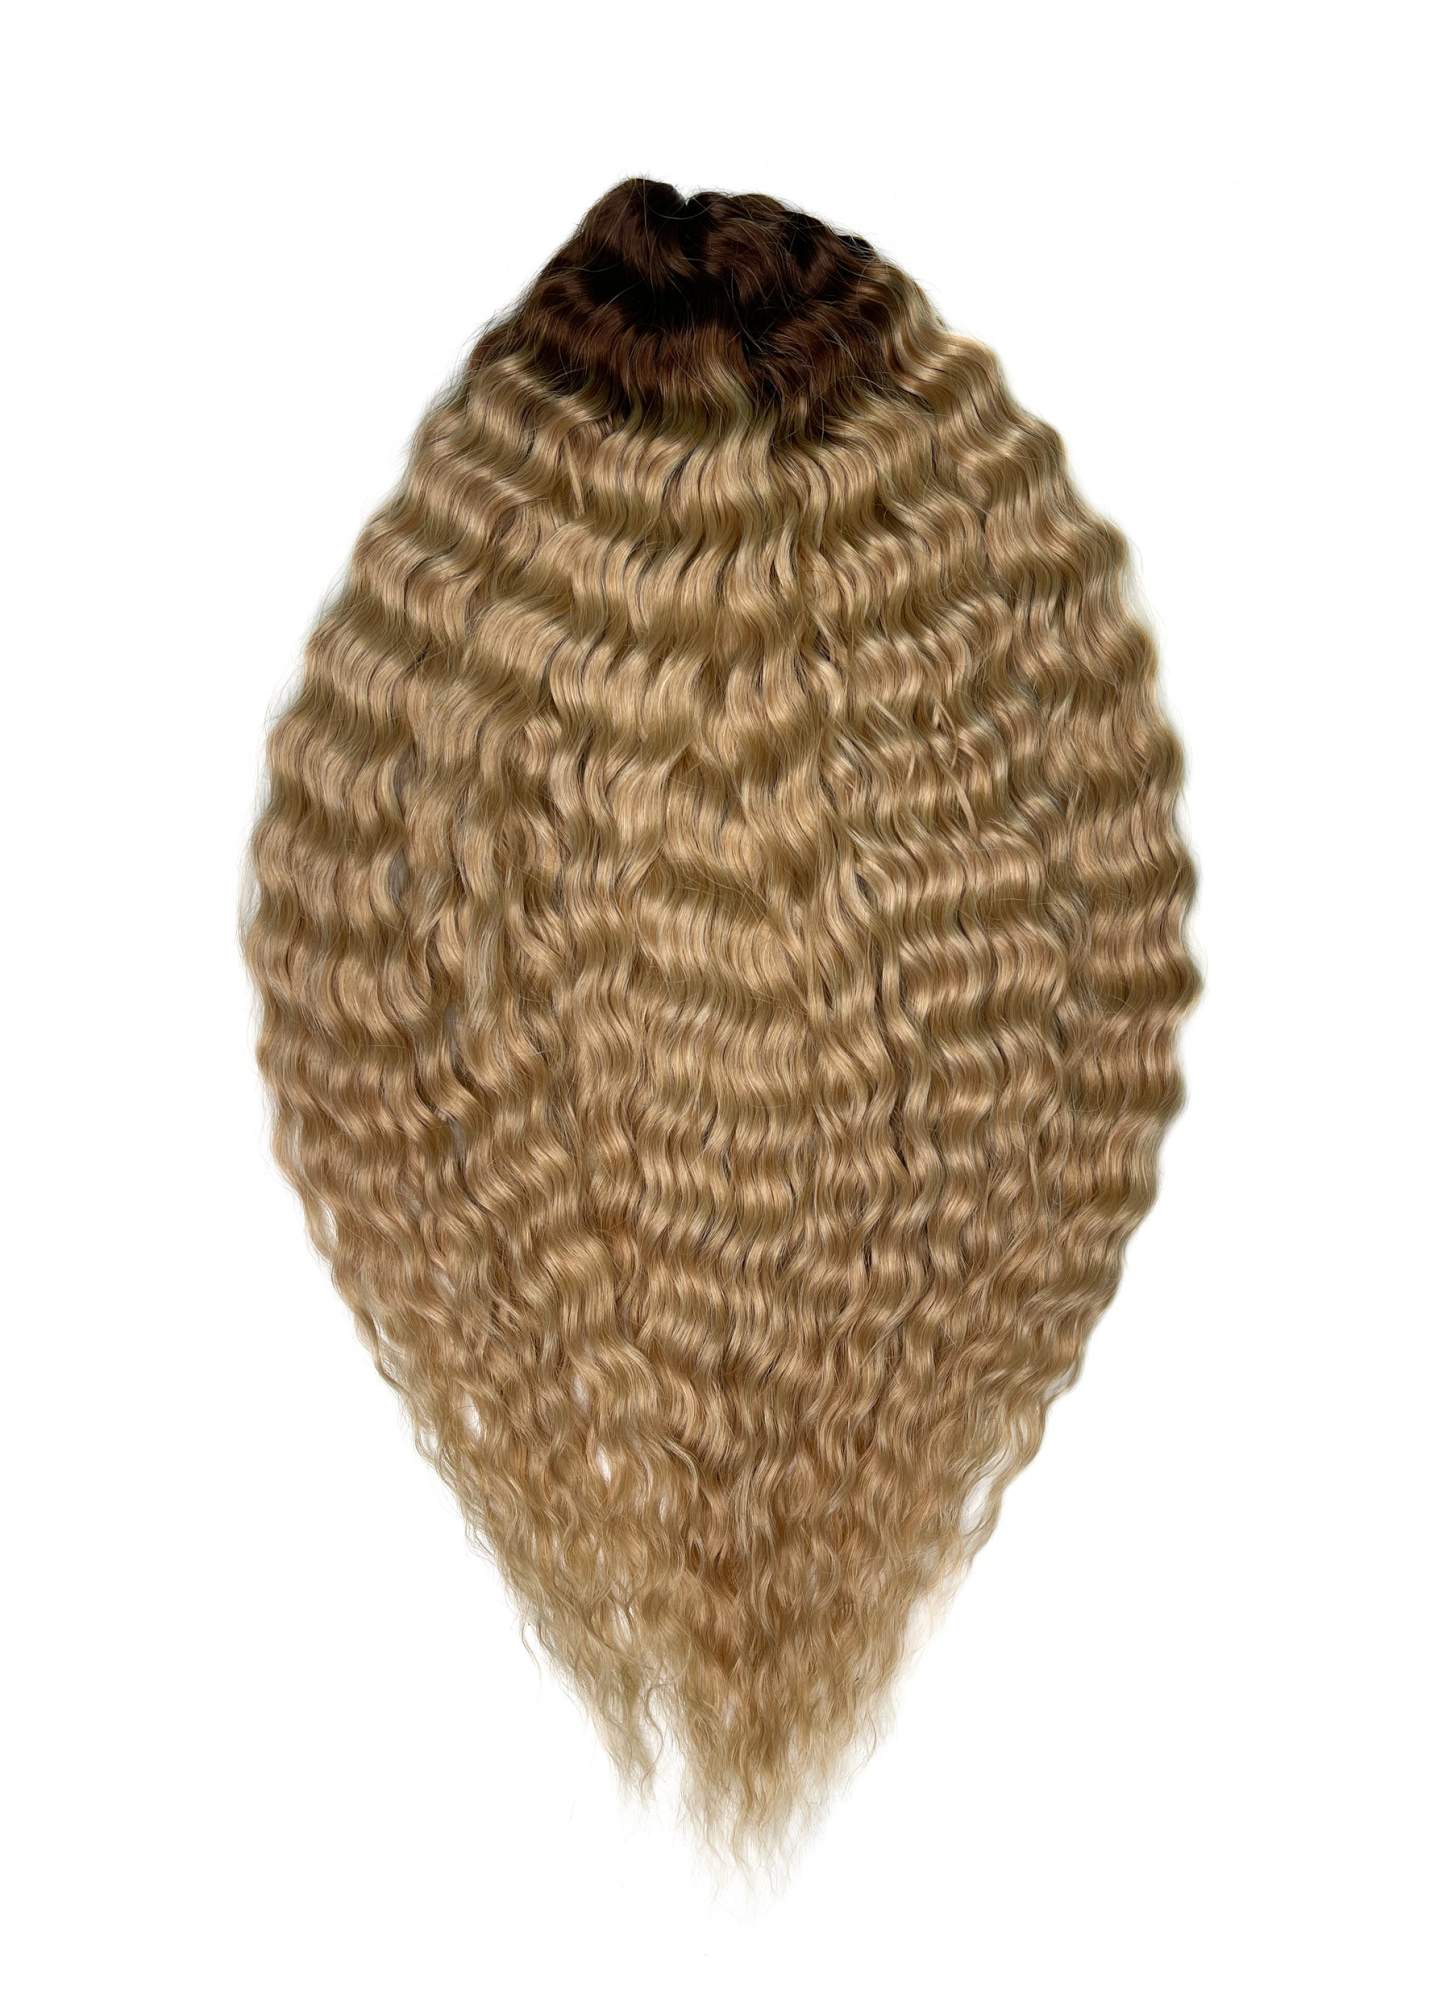 Афрокудри для плетения волос Ariel цвет TT-linen 55 русый длина 55см вес 300г резиночки для плетения браслетов rainbow loom коллекция средневековье лайм